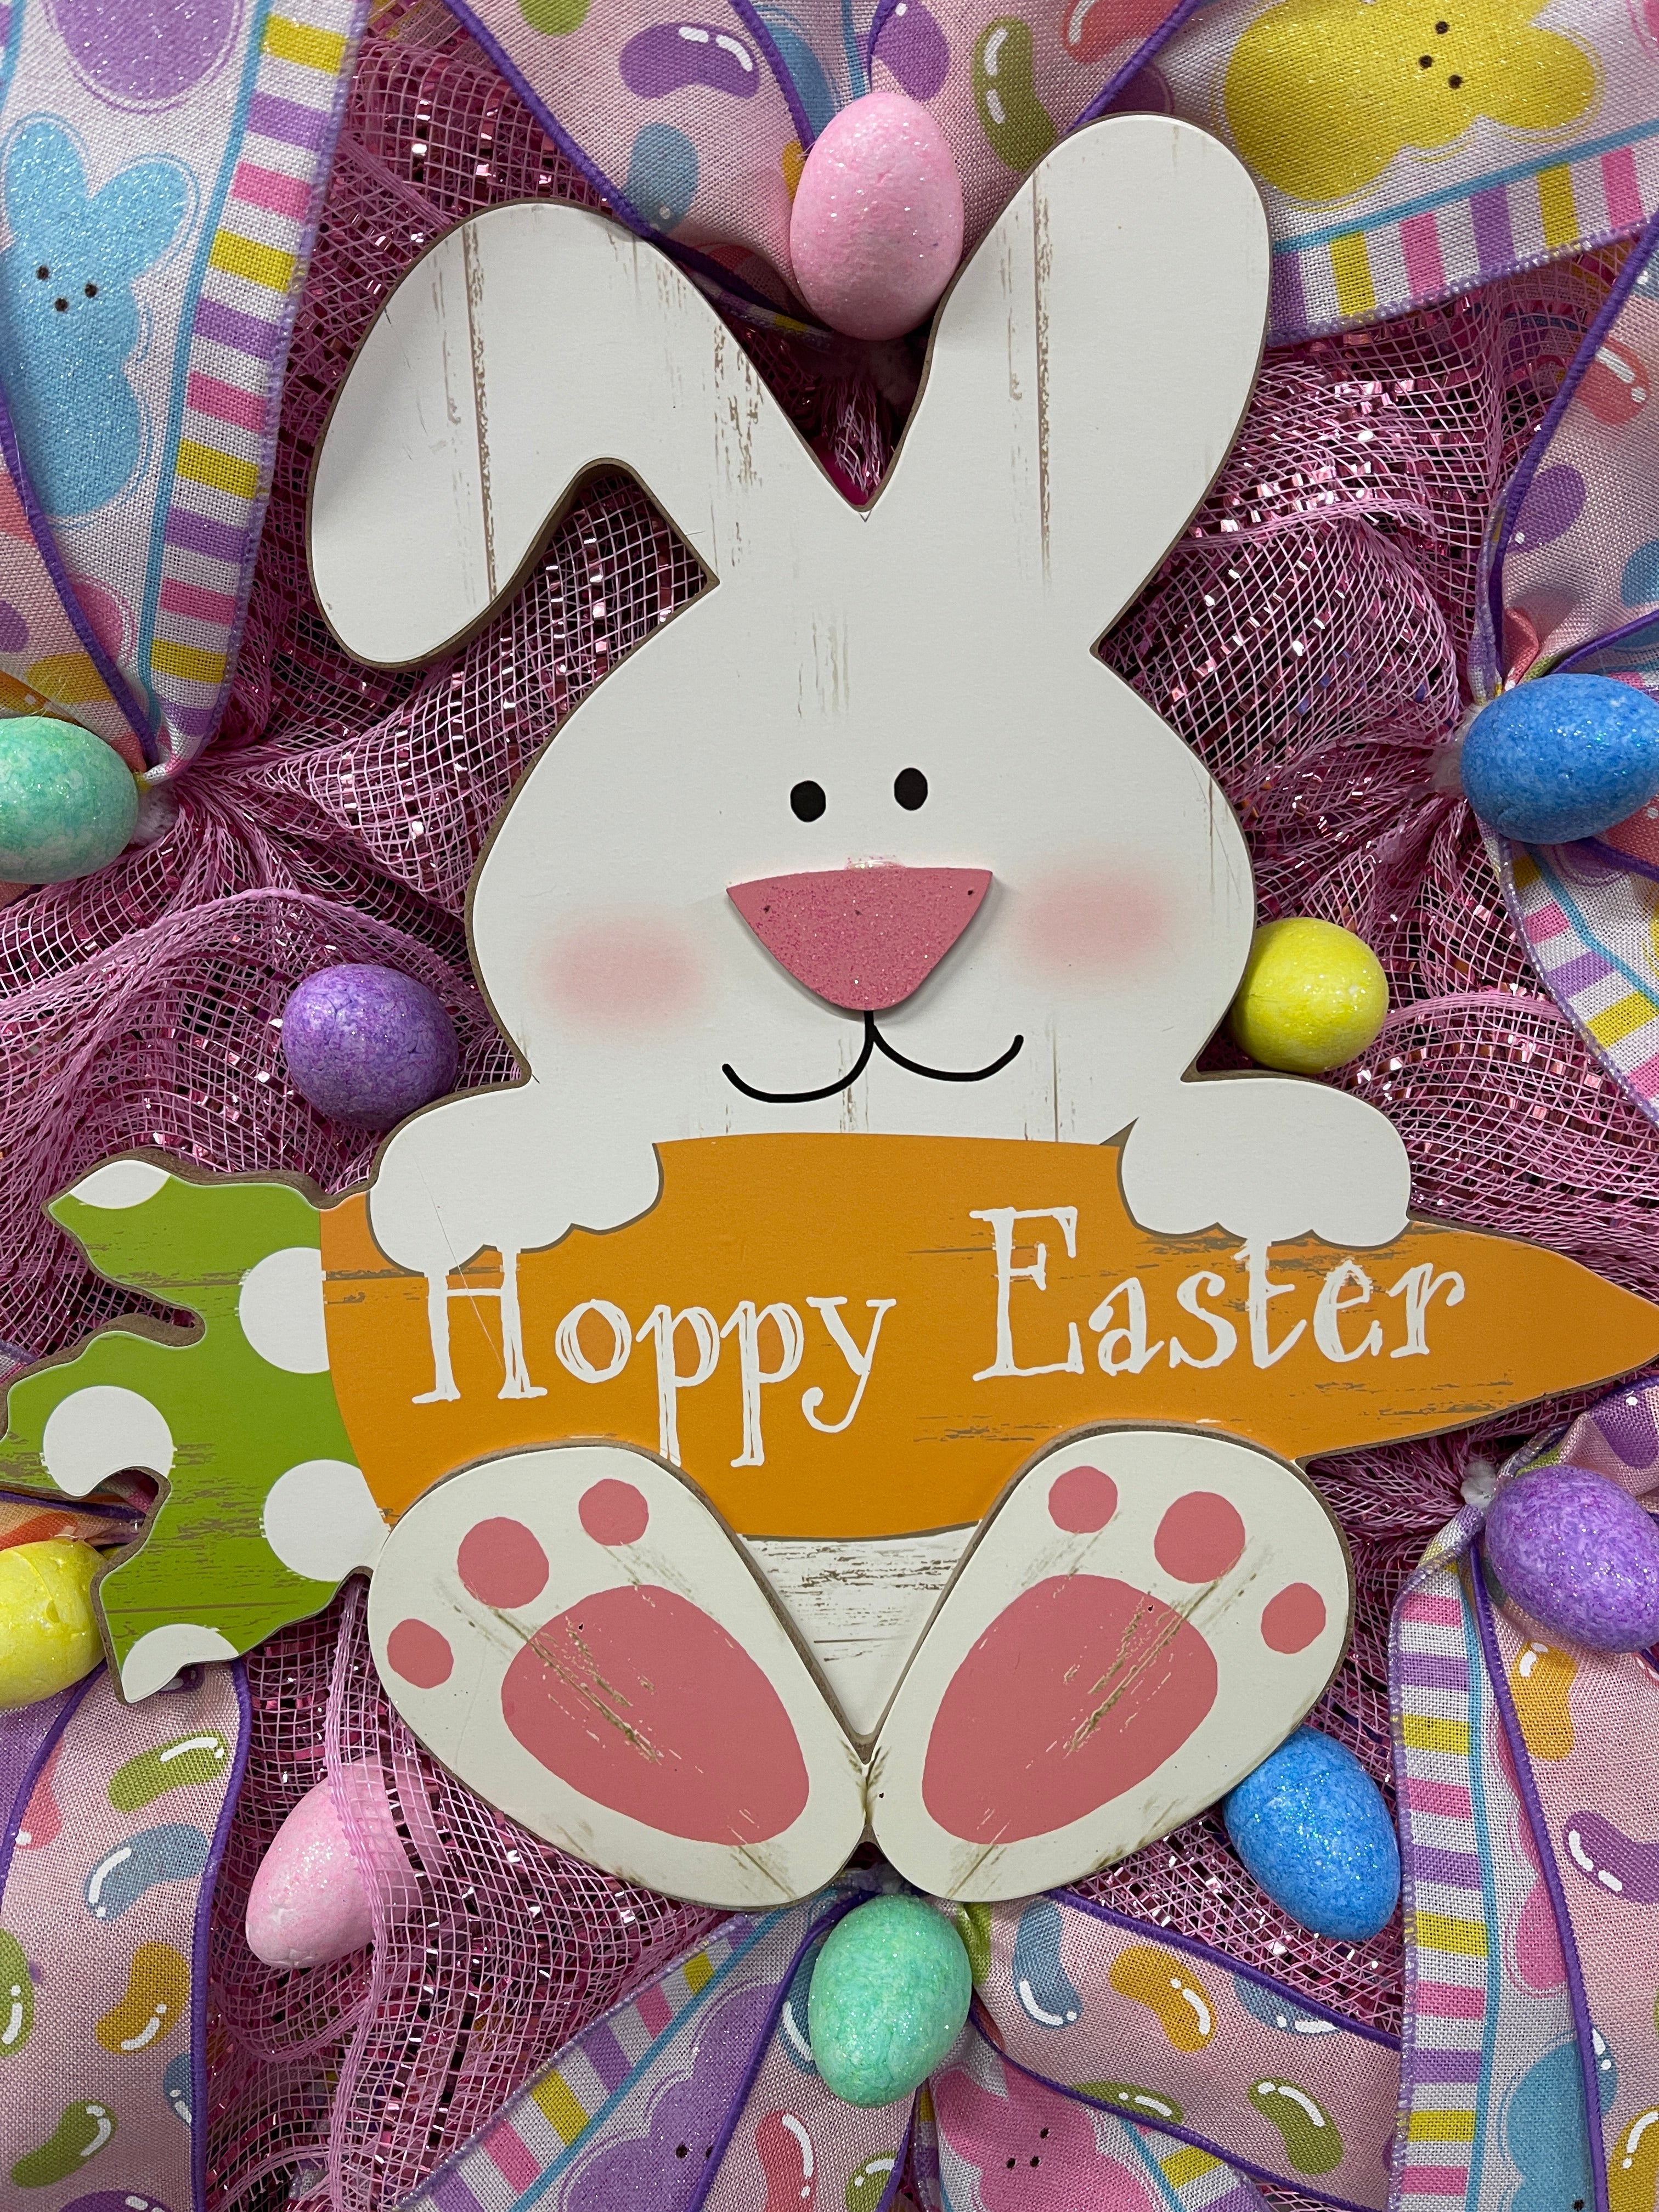 Hoppy Easter Bunny Storm Door Wreath by KatsCreationsNMore